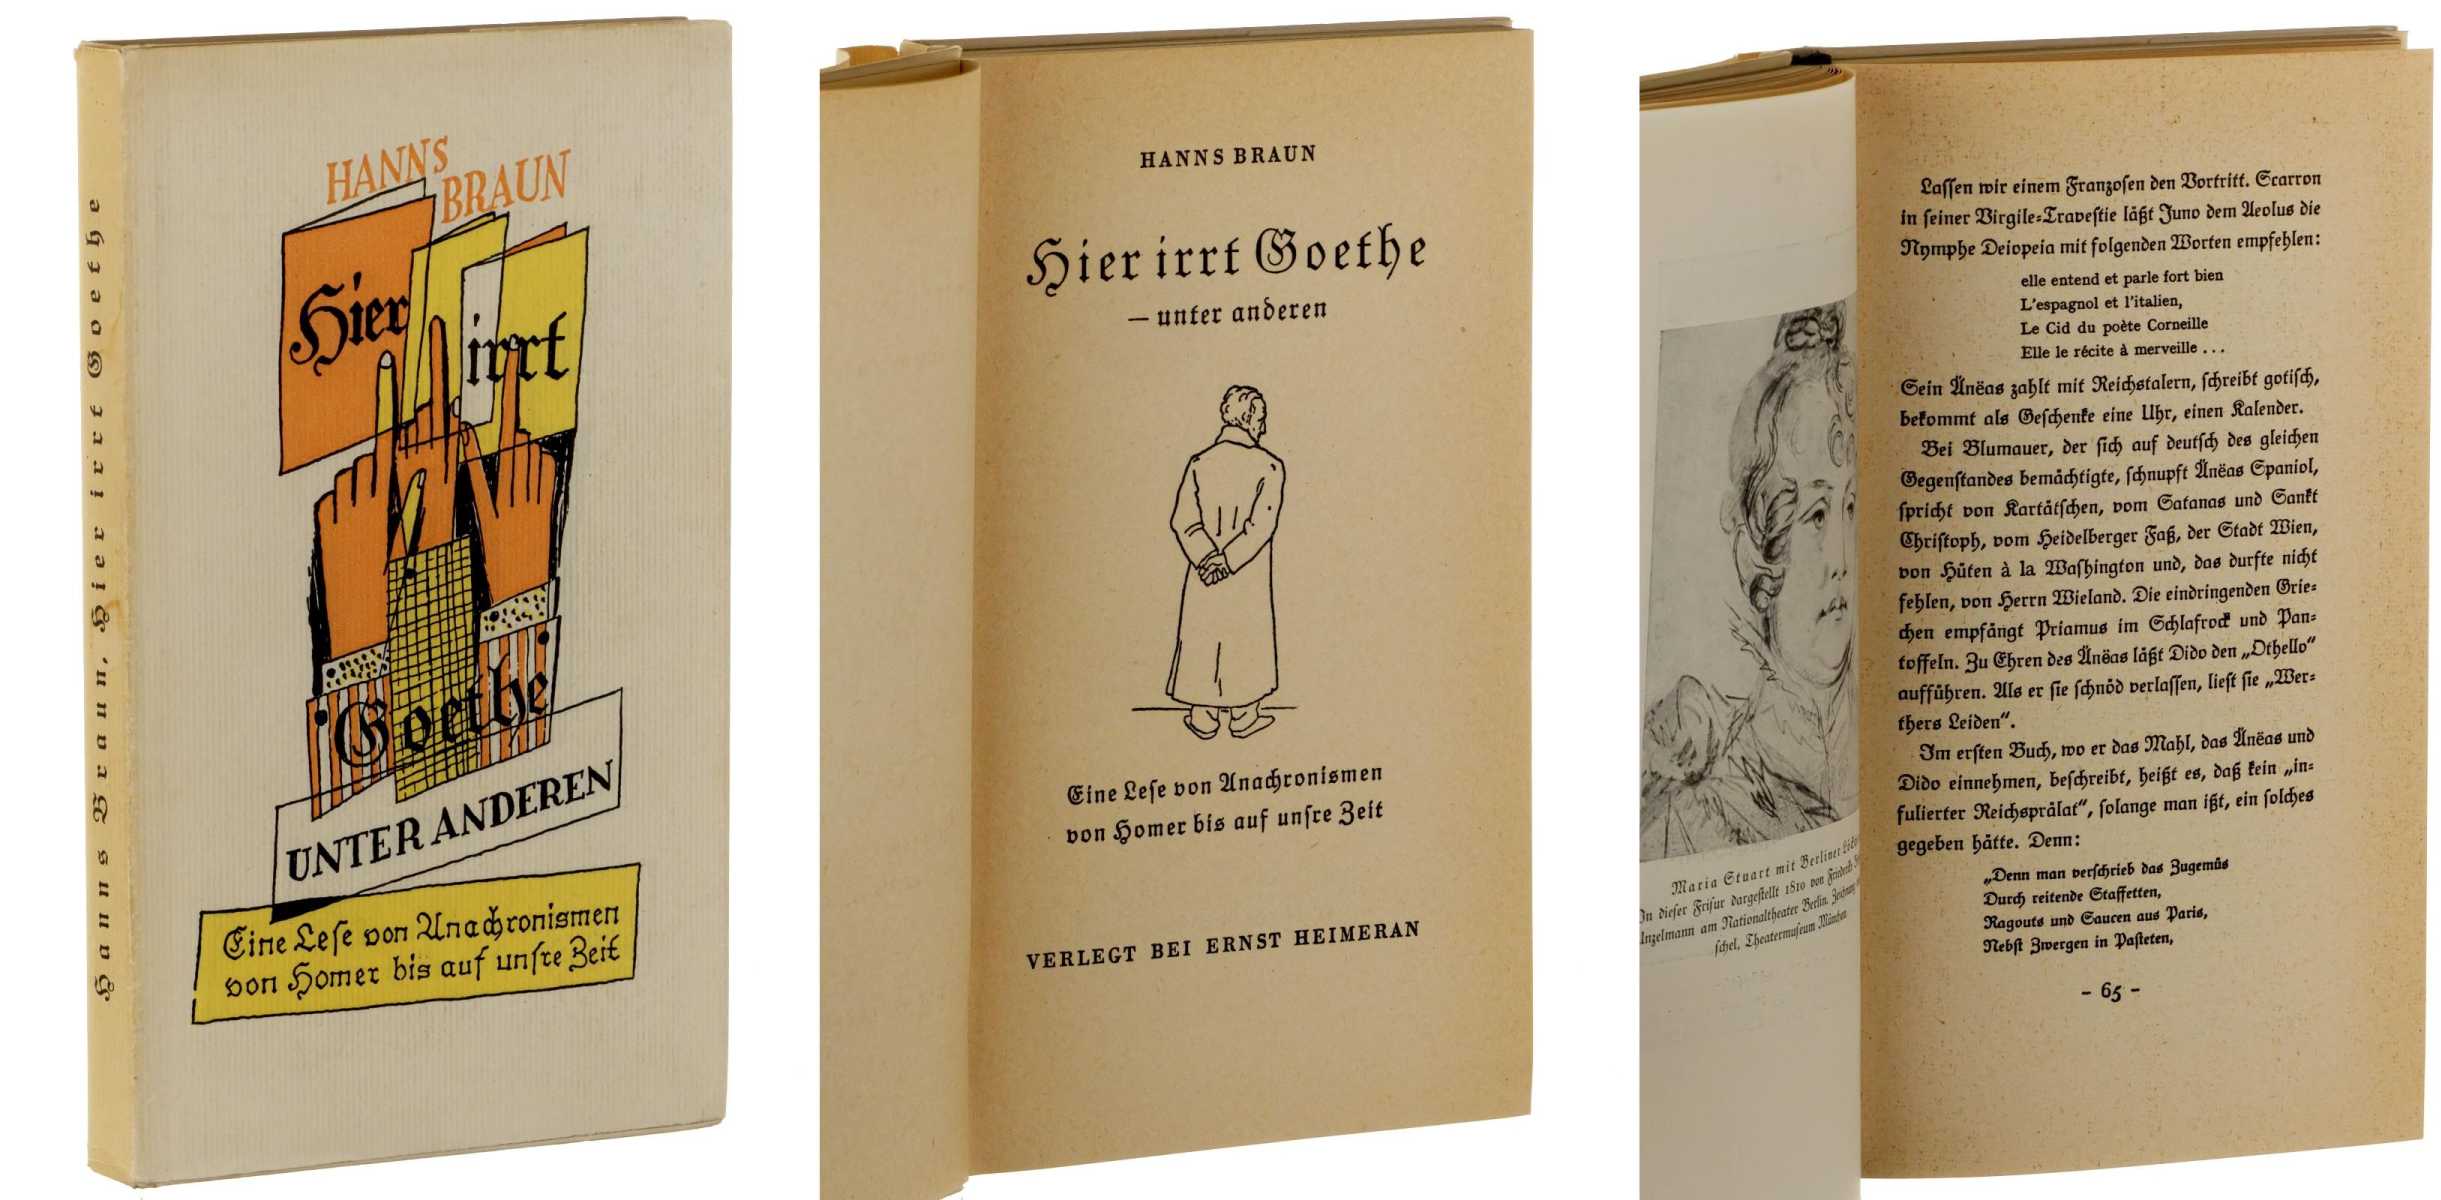 Braun, Hanns:  Hier irrt Goethe - unter anderen. Eine Lese von Anachronismen von Homer bis auf unsre Zeit. (Umschlag von Kurt Levy, Titelzeichnung von Fritz Fliege). 